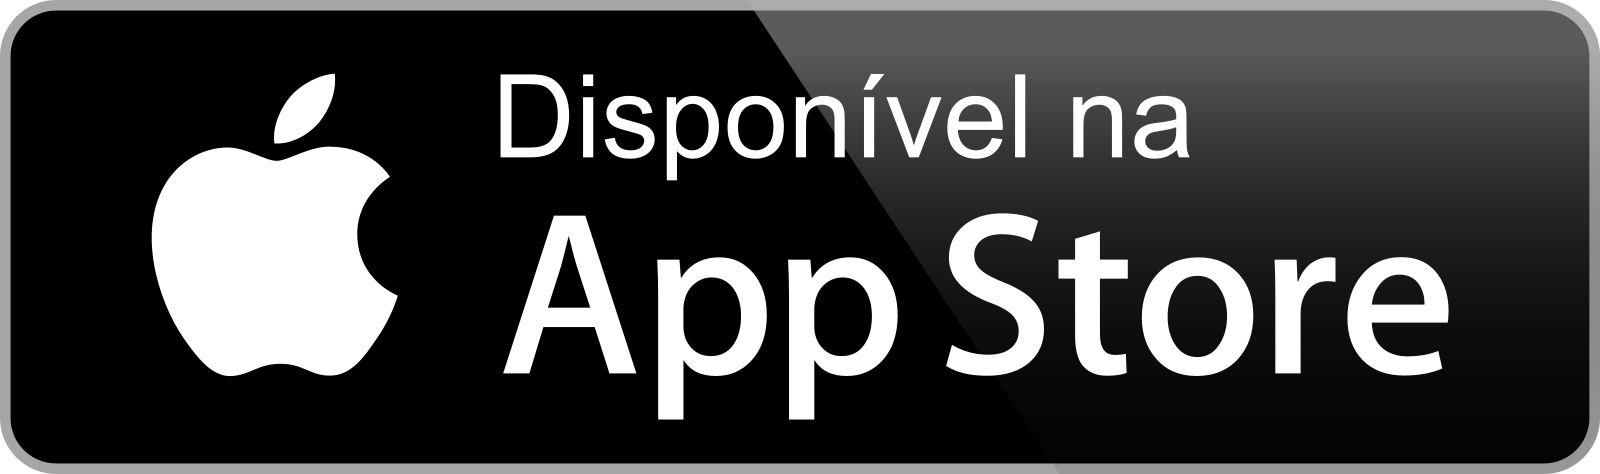 disponivel na app store botao 3 - Disponível na App Store - Botão Disponível na App Store